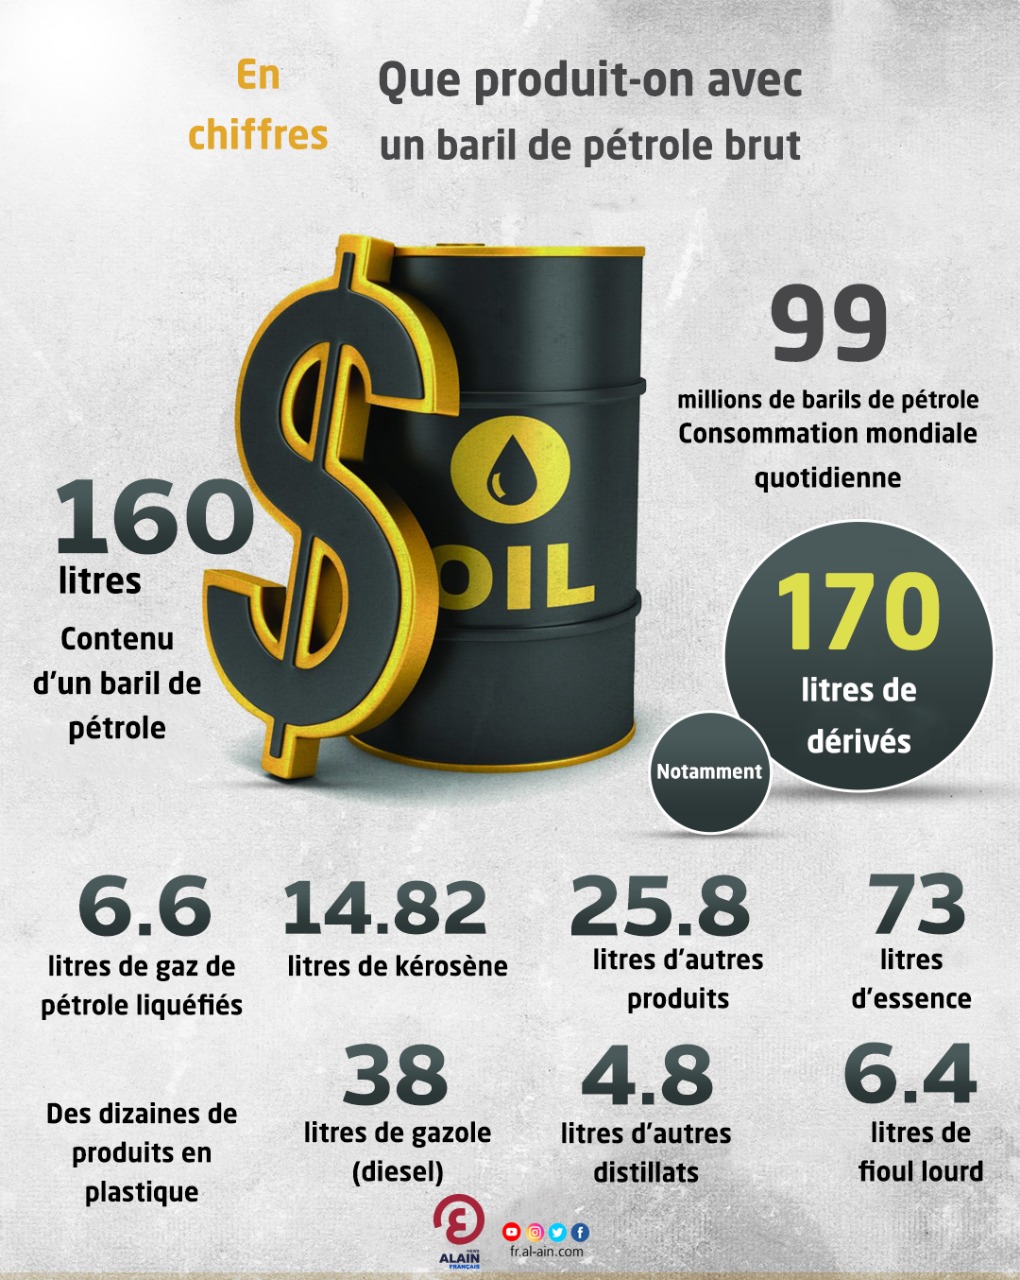 La quantité d'essence dans un baril de pétrole